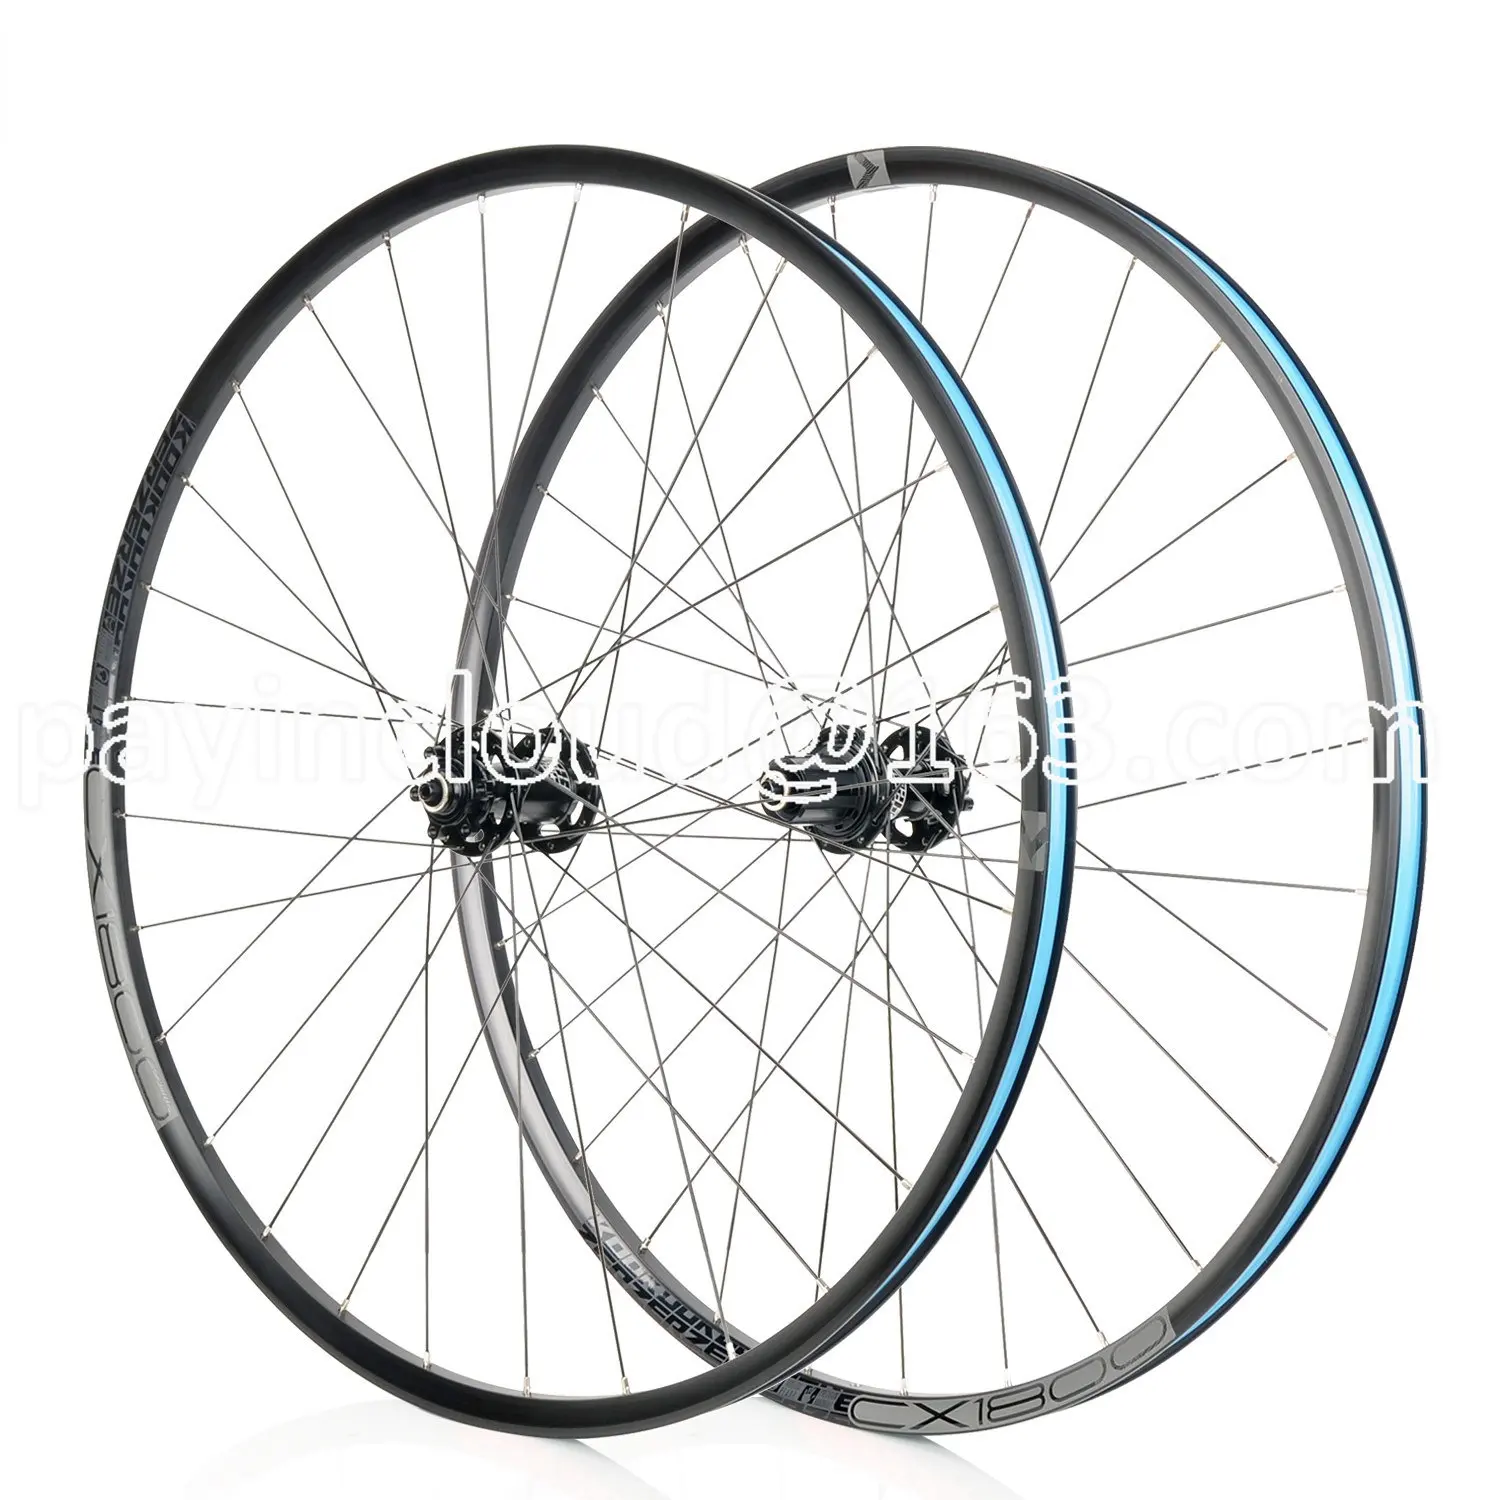 CX1800 Disc Brake Road Bicycle Wheel Set 28 Holes 4 72 Rings 700C